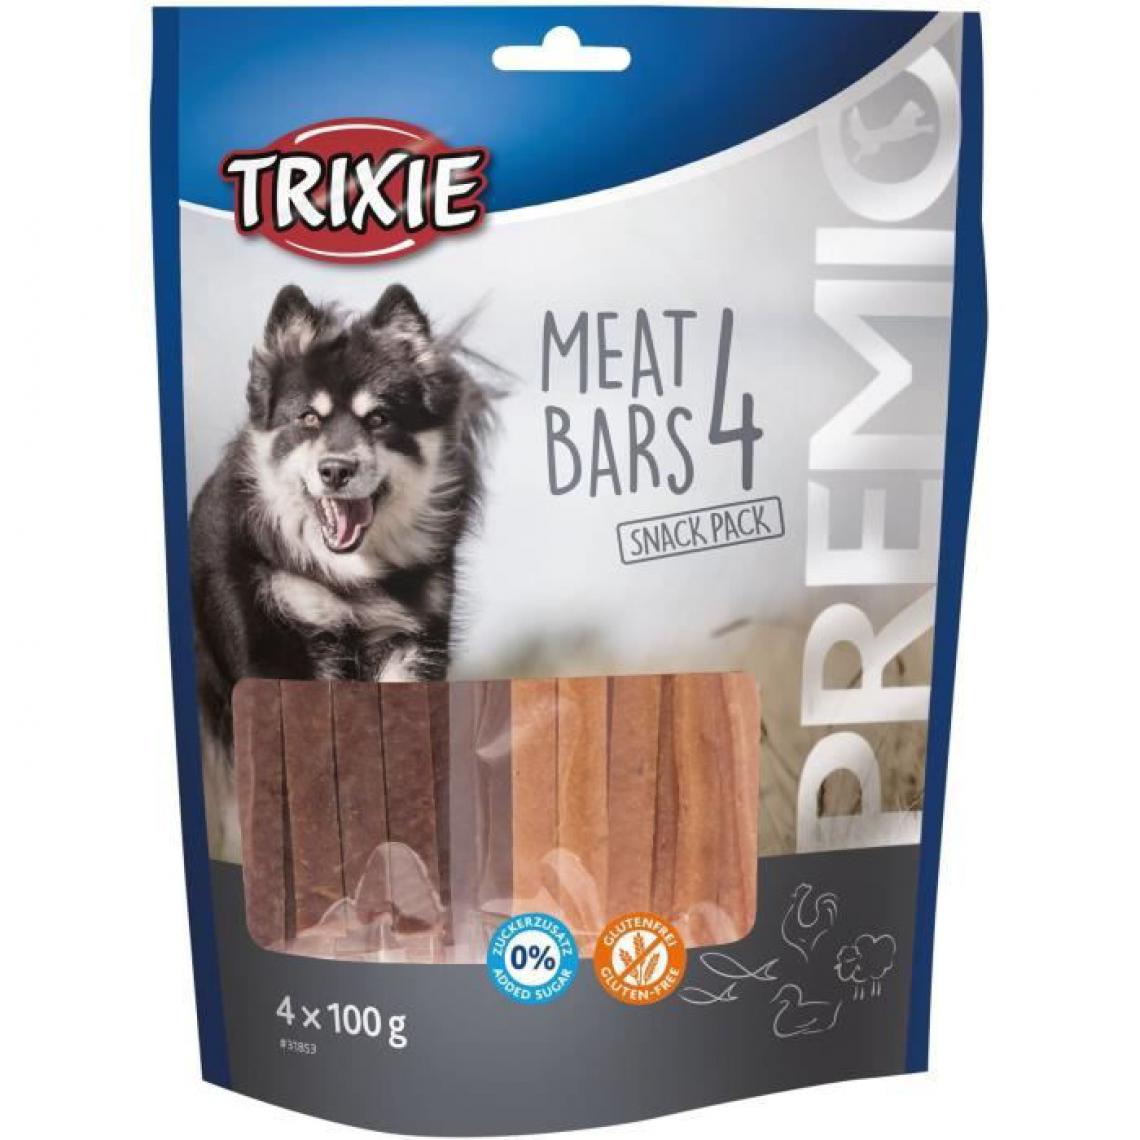 Trixie - PREMIO 4 Barres de viande - Poulet, canard, agneau, saumon - 4 x 100 g - Friandise pour chien